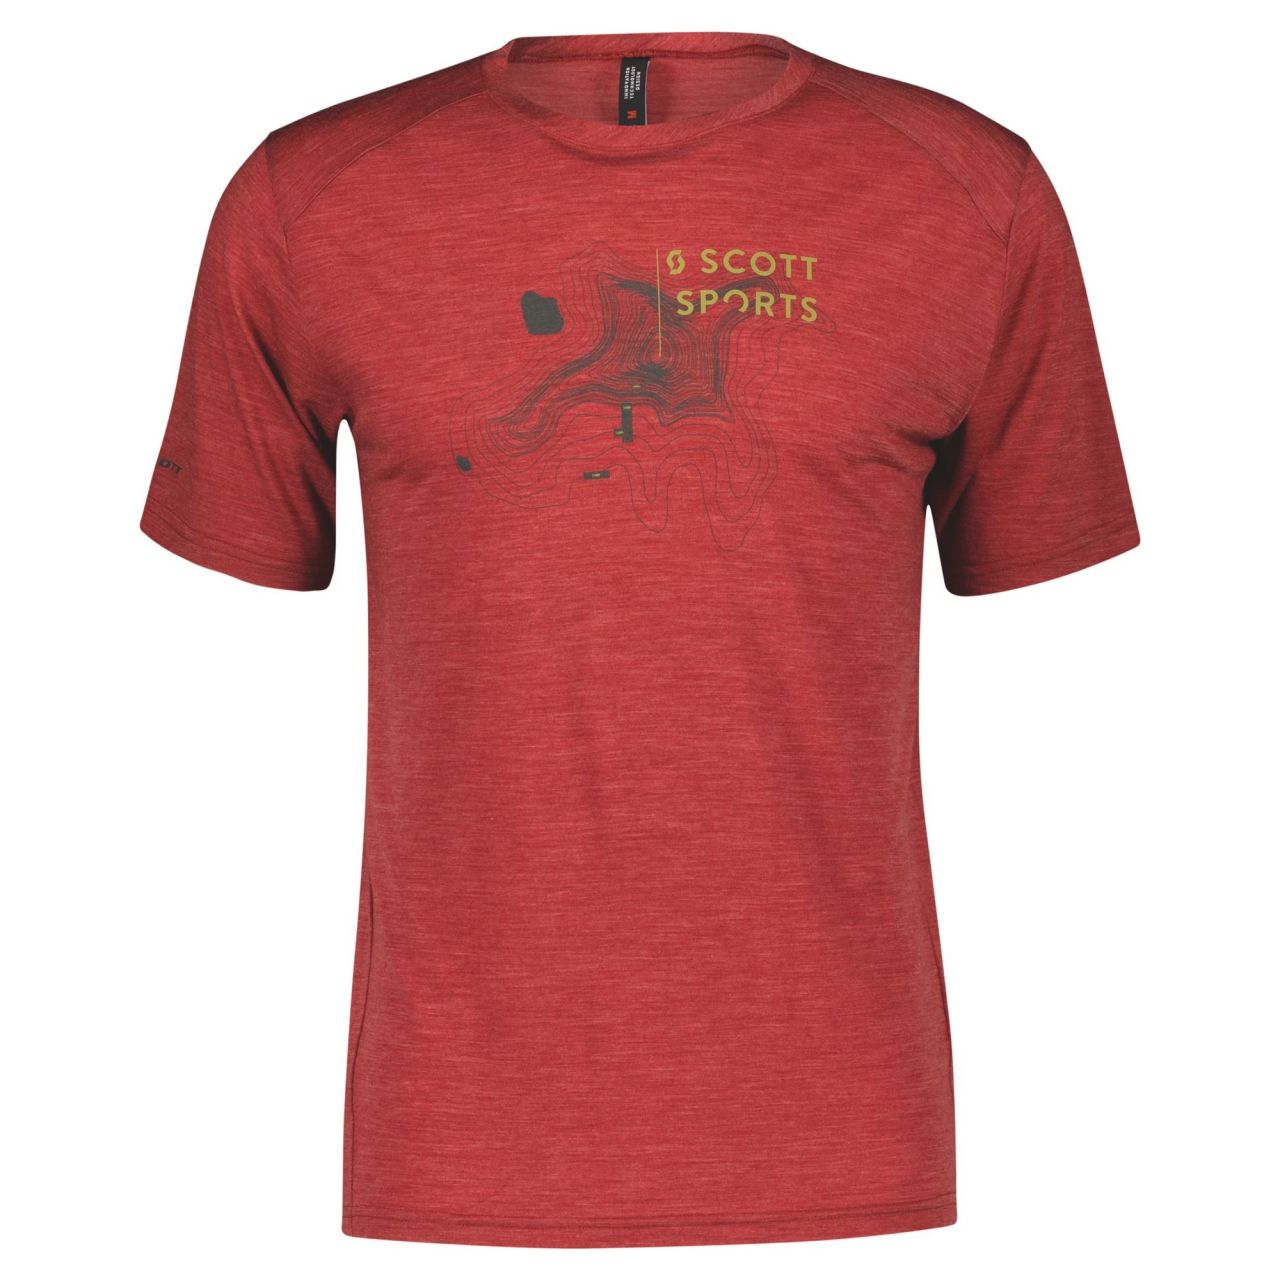 SCOTT TEE SHIRT SCOTT DEFINED MERINO SS TUSCAN RED  Tech Tee shirt running